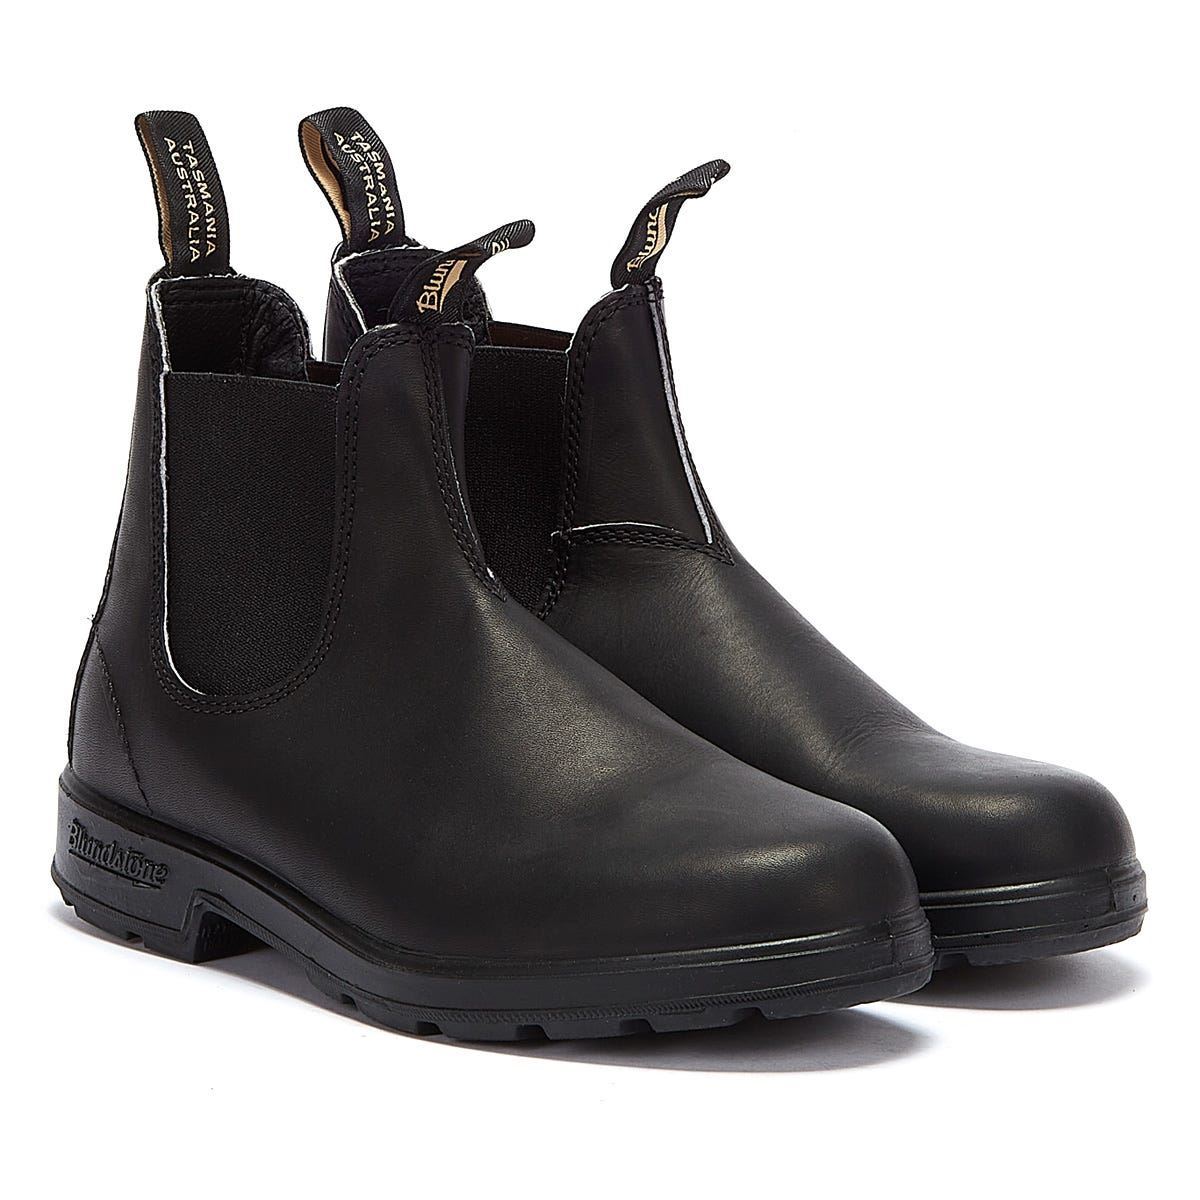 Blundstone Originals Classic Black Boots